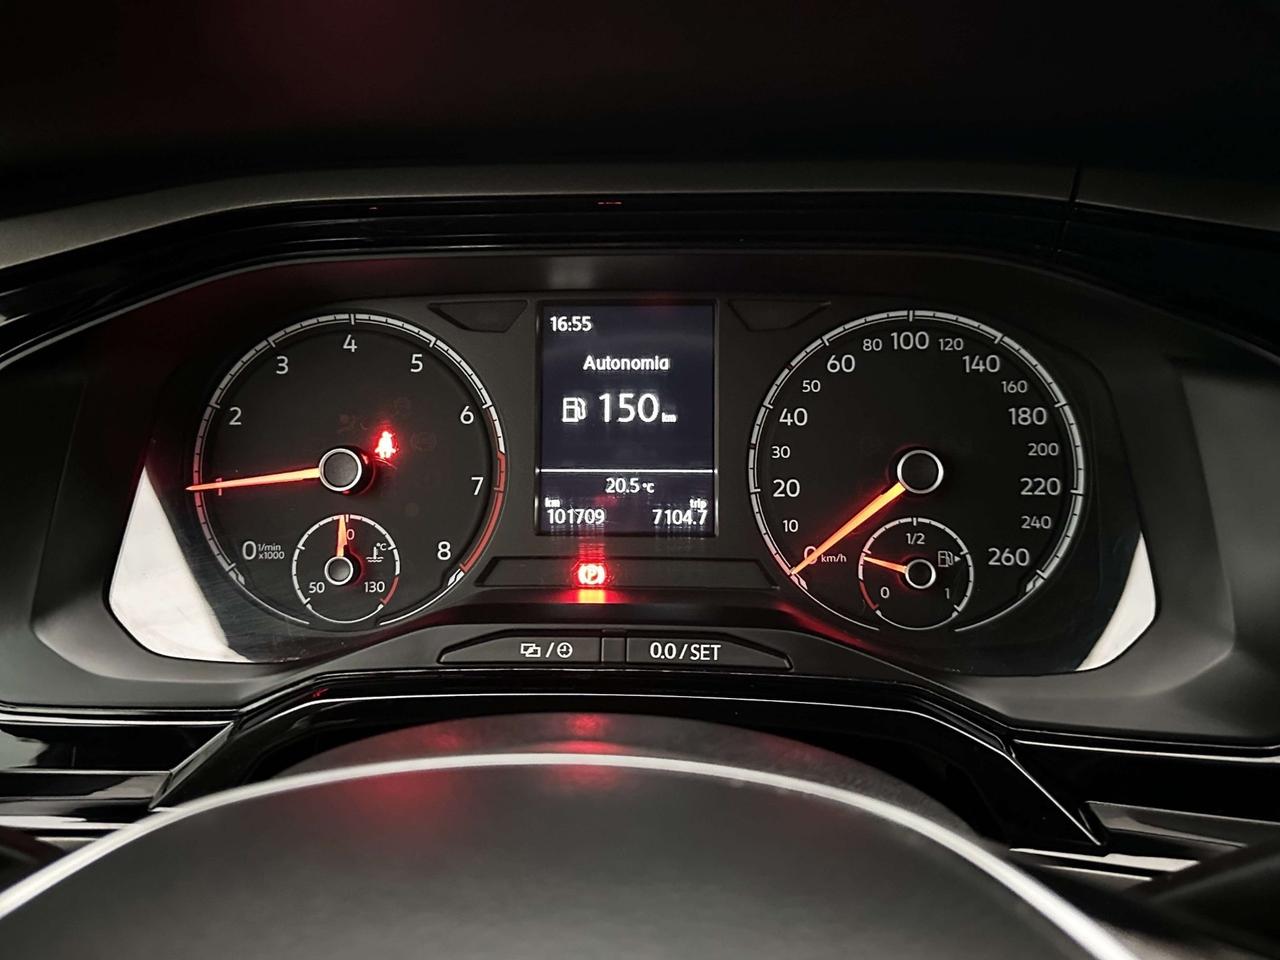 Volkswagen Polo 1.0 Benzina 65CV E6 - 2018